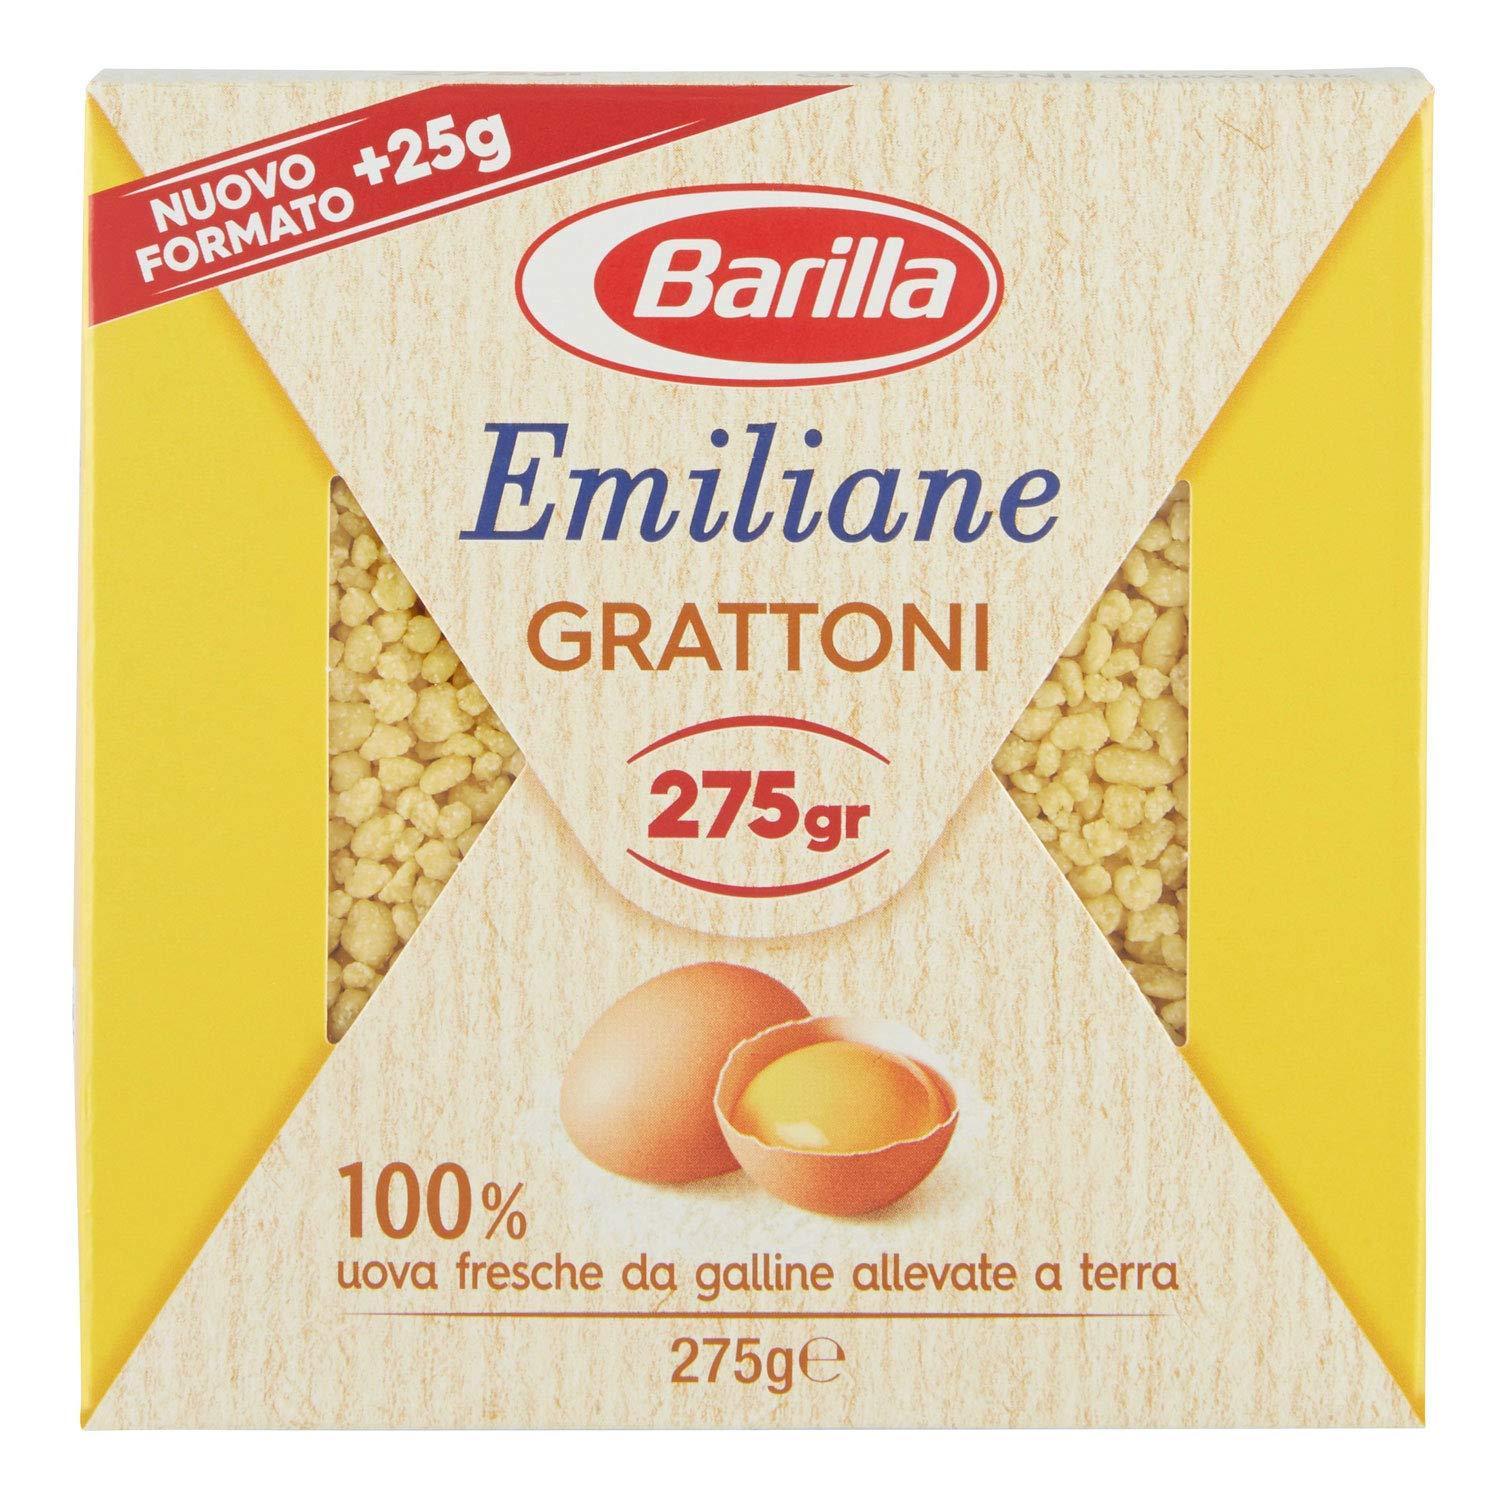 pasta-emiliane-grattoni-barilla-275gr-1